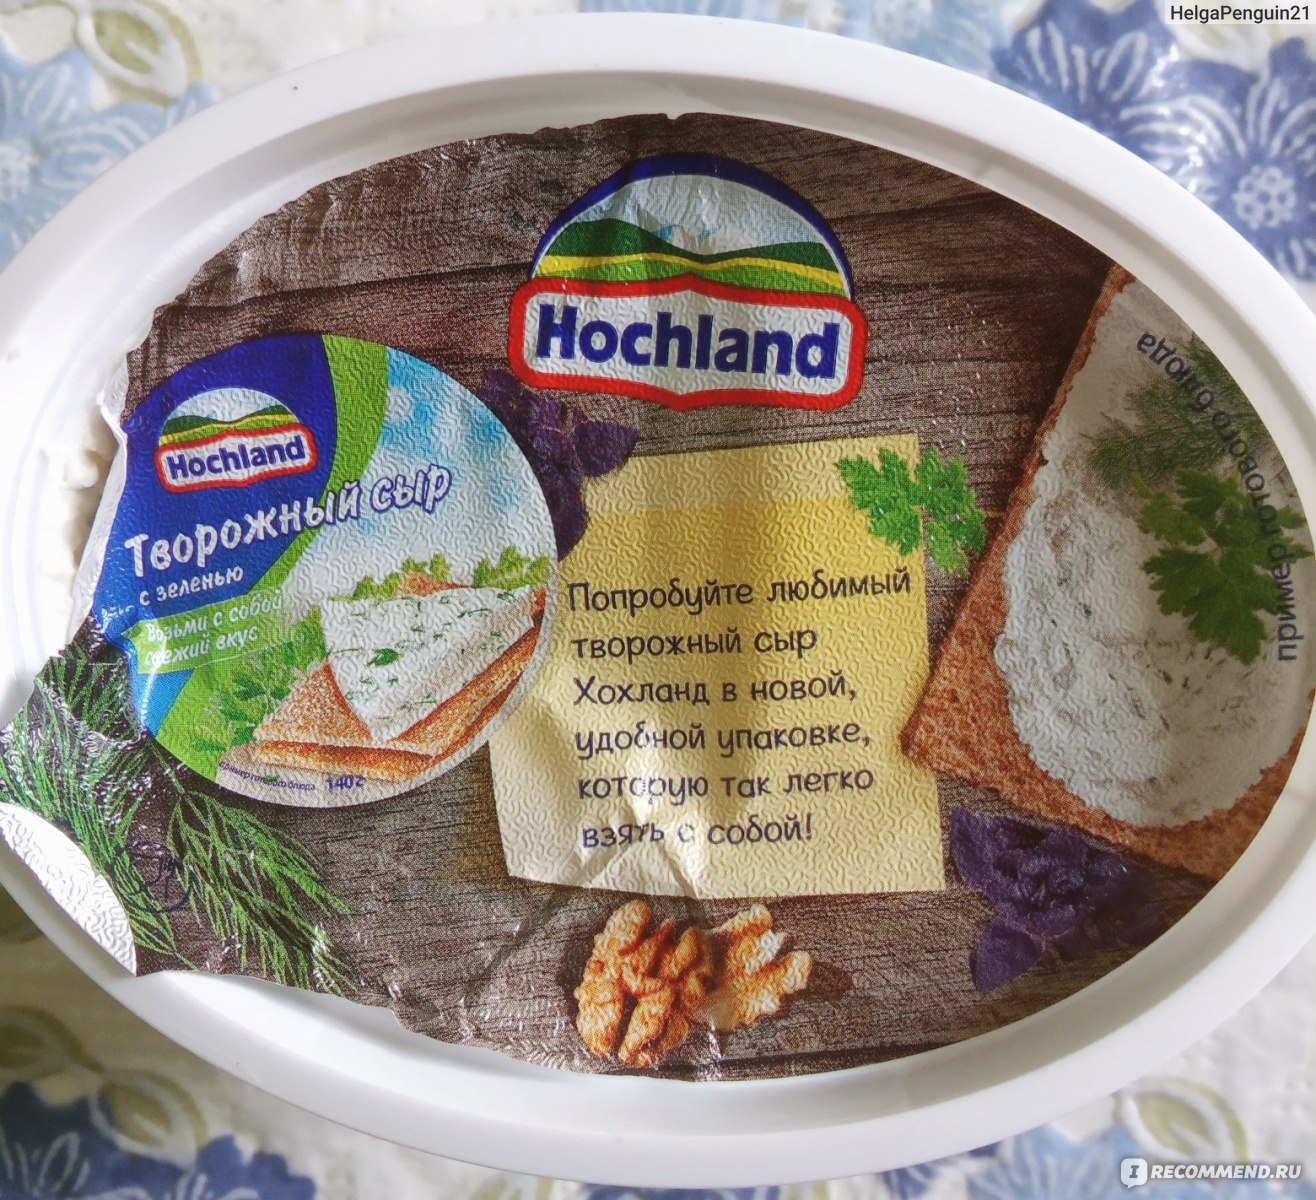 Hochland творожный сыр с зеленью